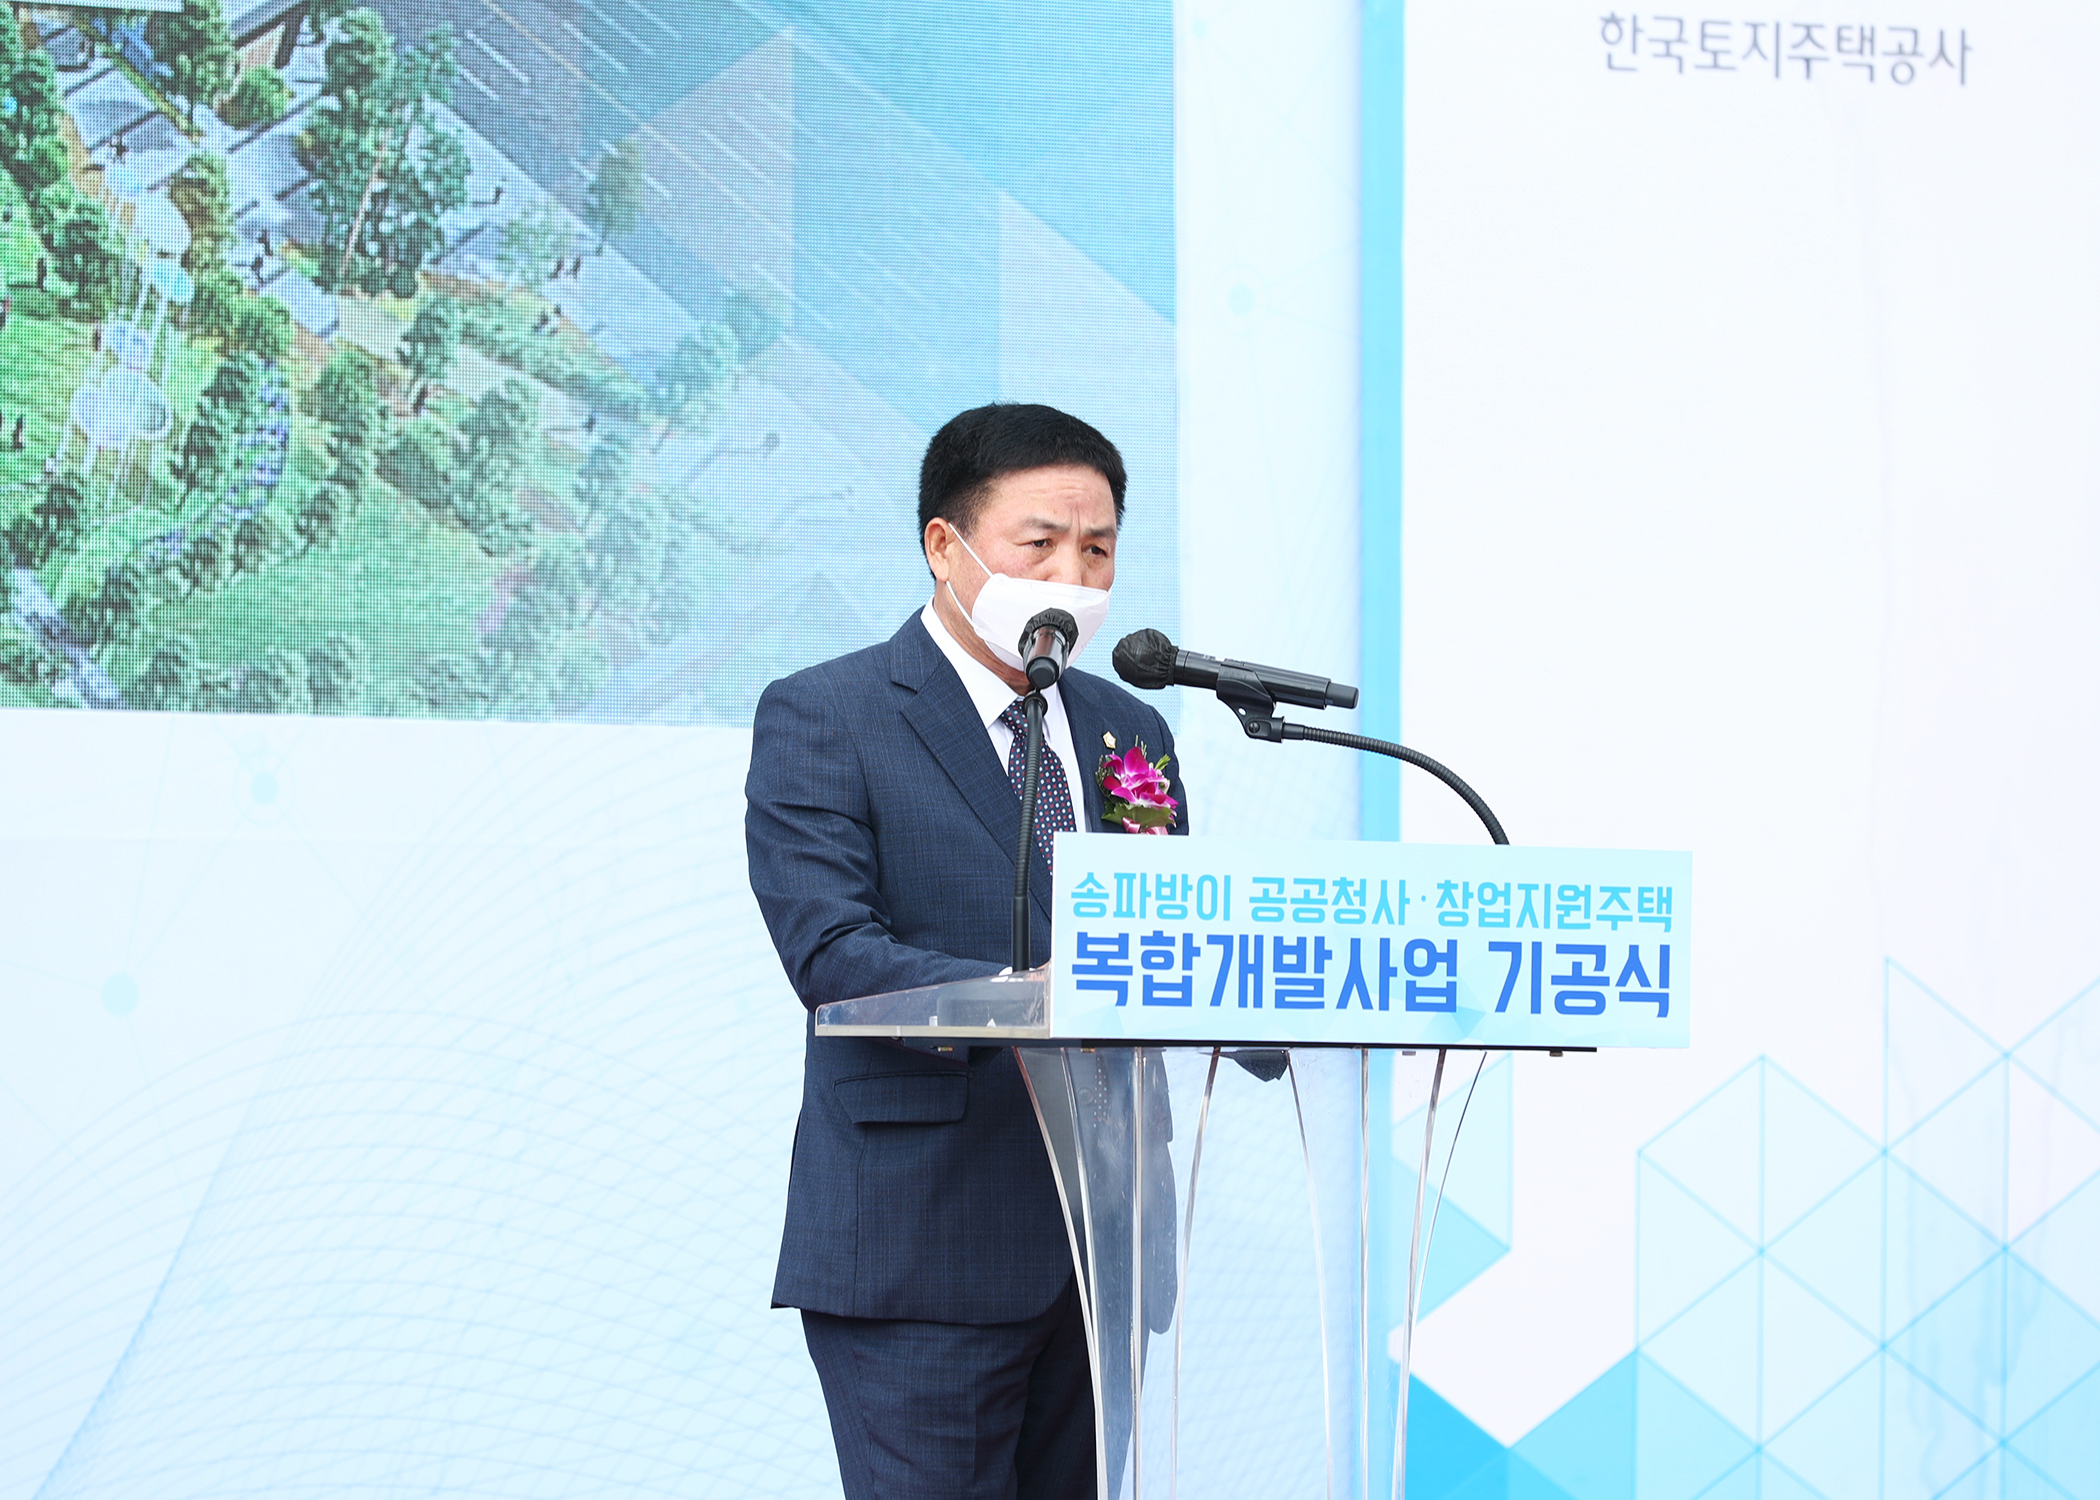 송파방이 공공청사 창업지원주택 복합개발사업 기공식 - 2